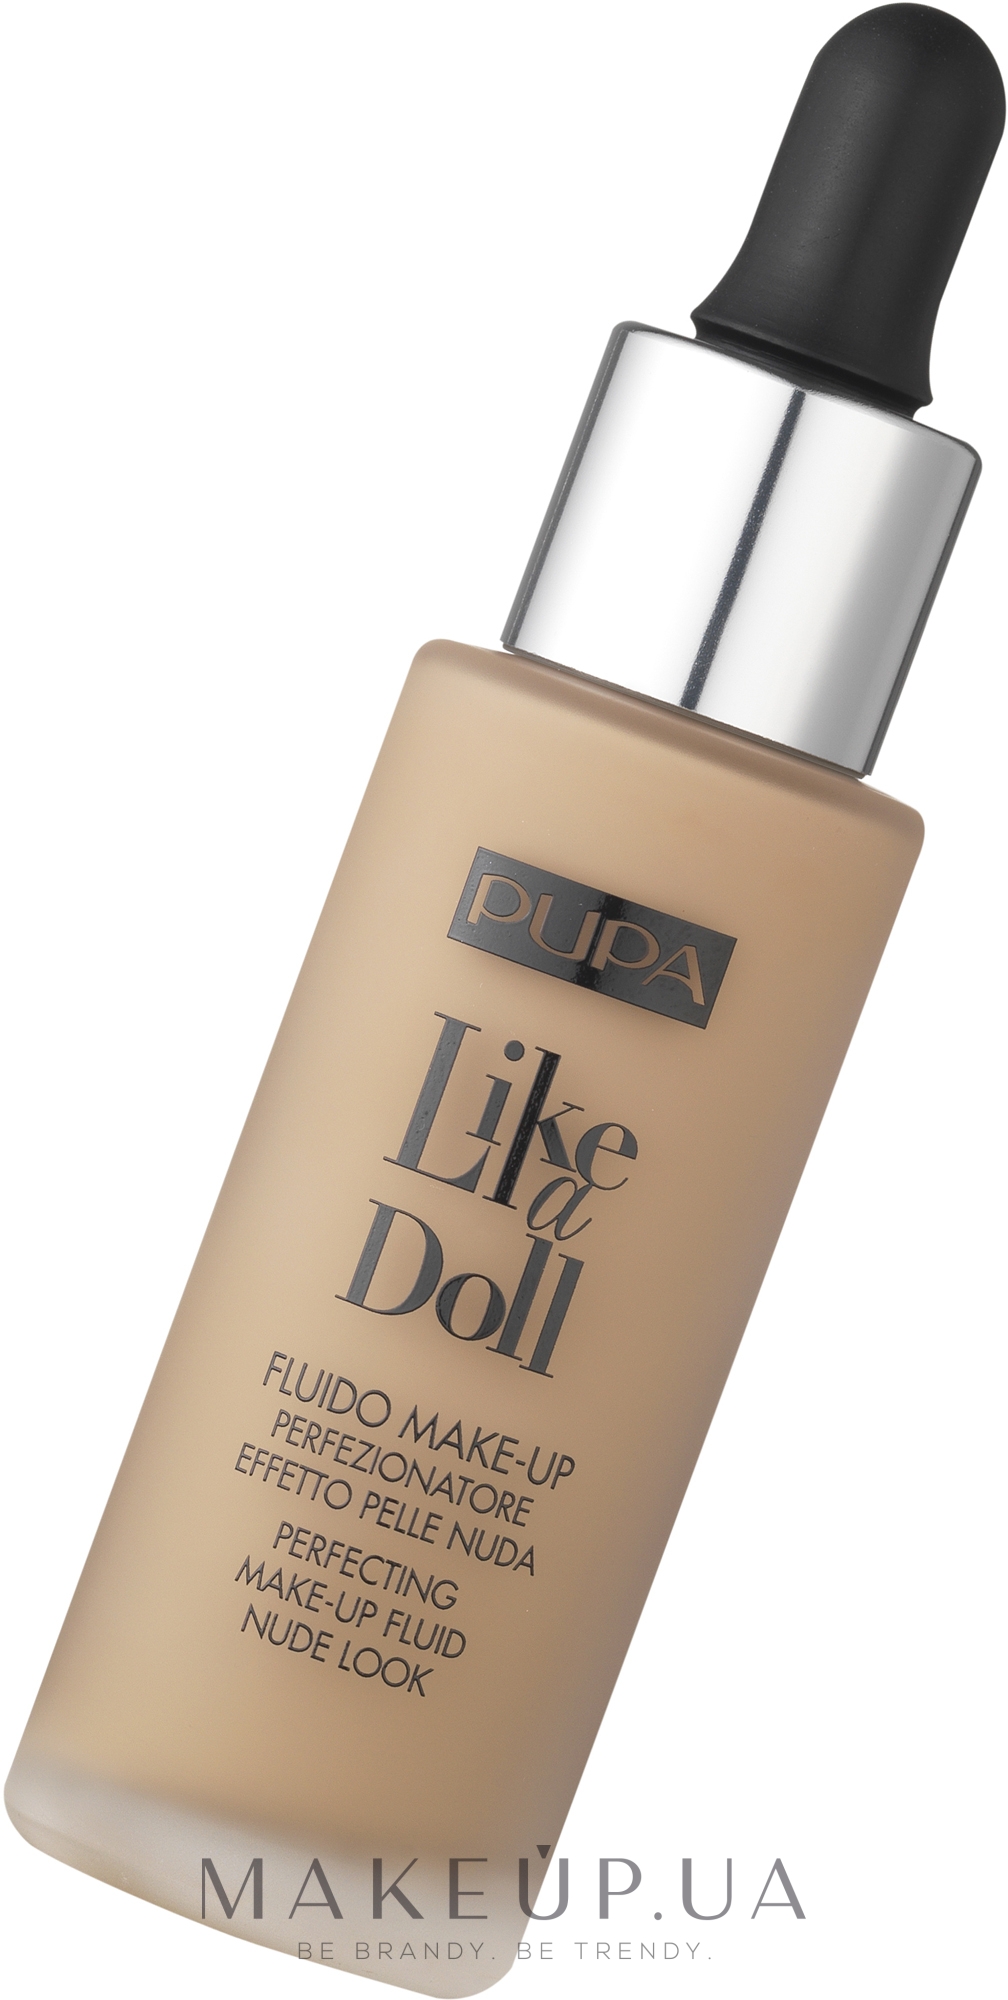 Pupa Like a Doll Perfecting Make-up Fluid Nude Look - Жидкая тональная основа: купить по лучшей цене в Украине | Makeup.ua